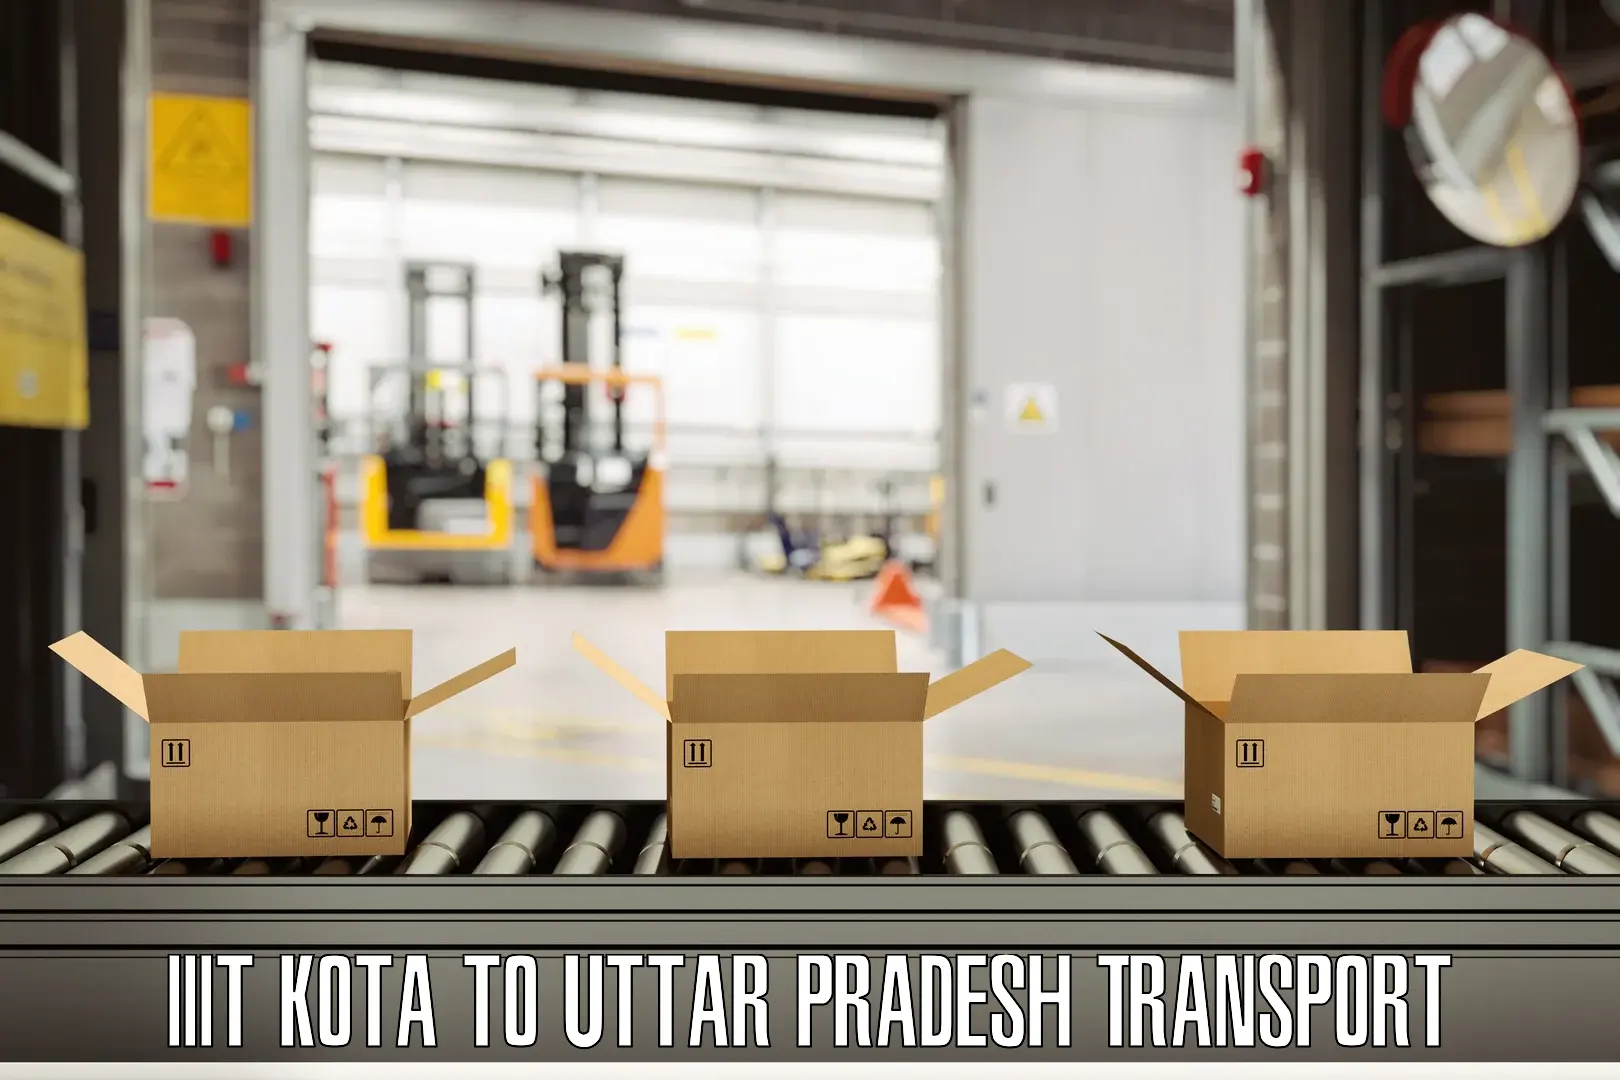 India truck logistics services IIIT Kota to Prayagraj